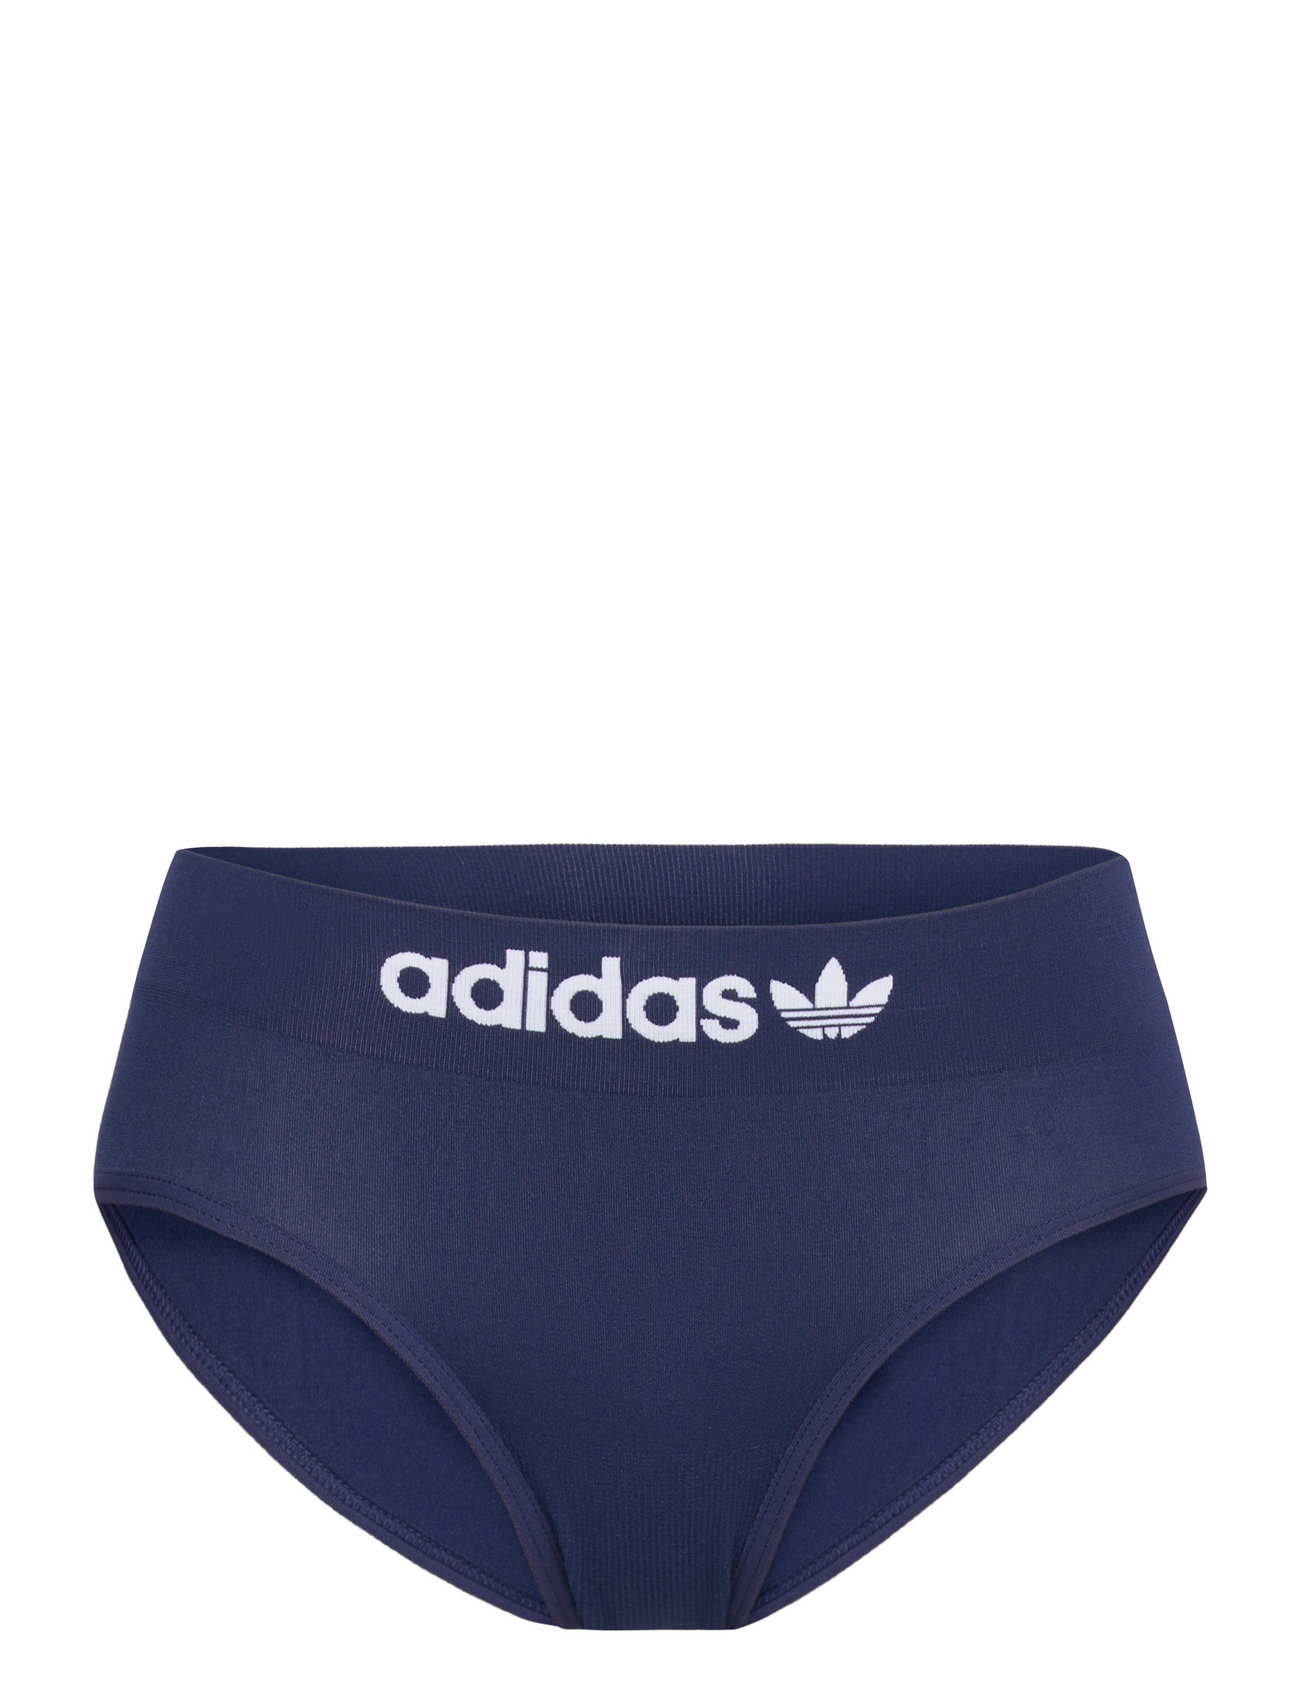 Micro-Pants Sport Panties Briefs Navy Adidas Originals Underwear